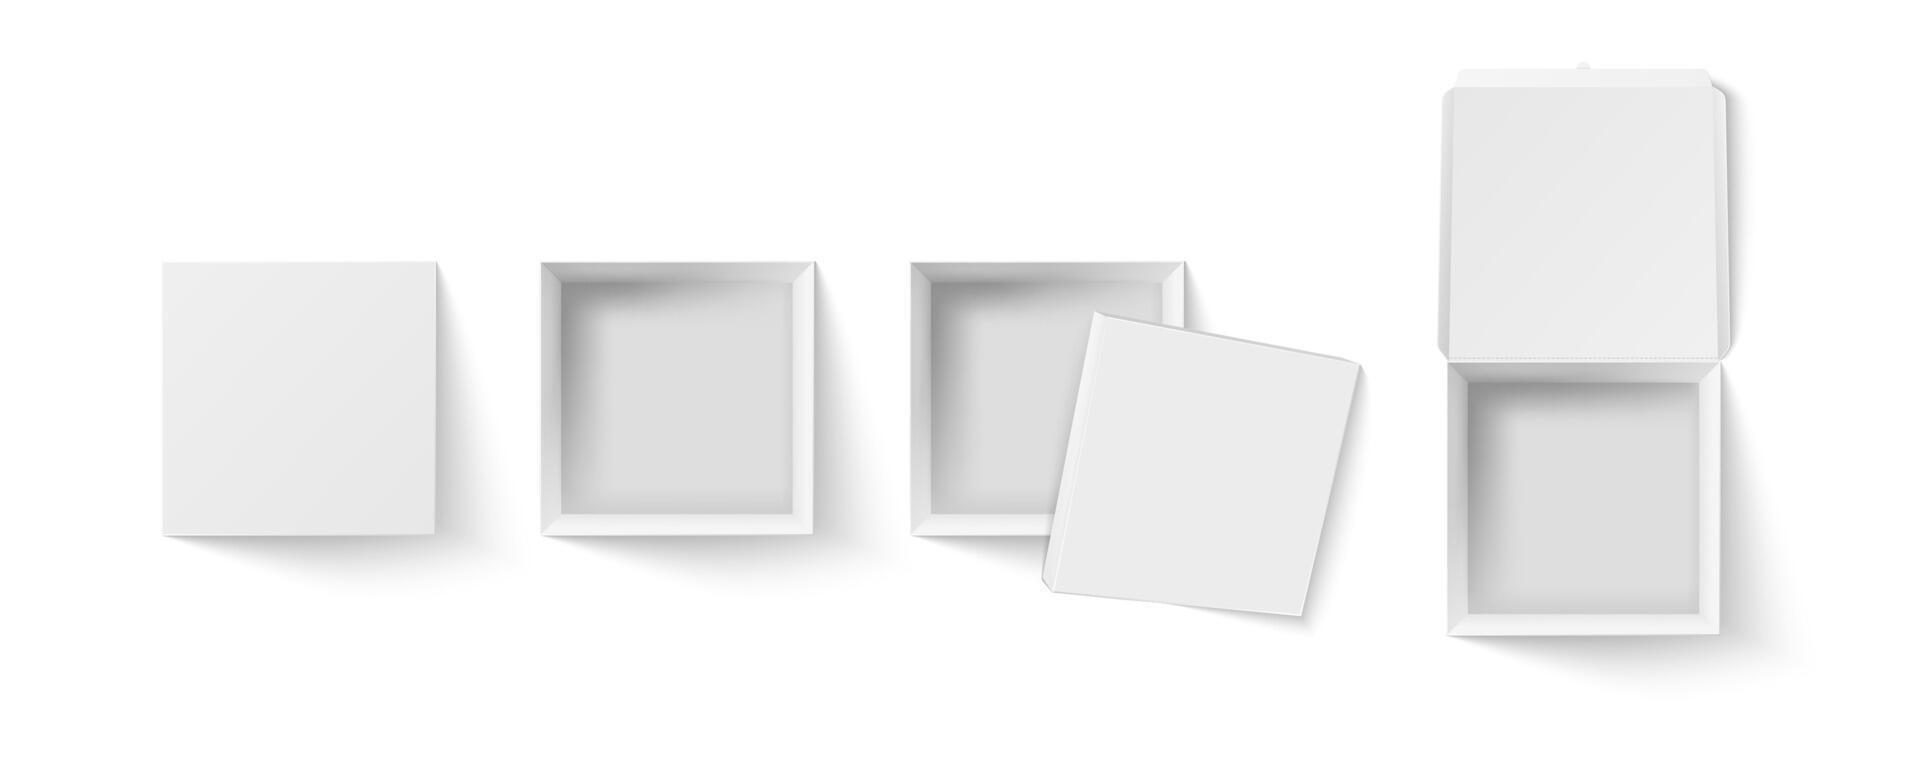 piazza scatola superiore Visualizza modello. vuoto pacchetto, bianca carta regalo scatole e Pizza confezione realistico 3d vettore illustrazione impostare. Aperto e chiuso pacco contenitori, scatola di cartone imballaggi clipart collezione